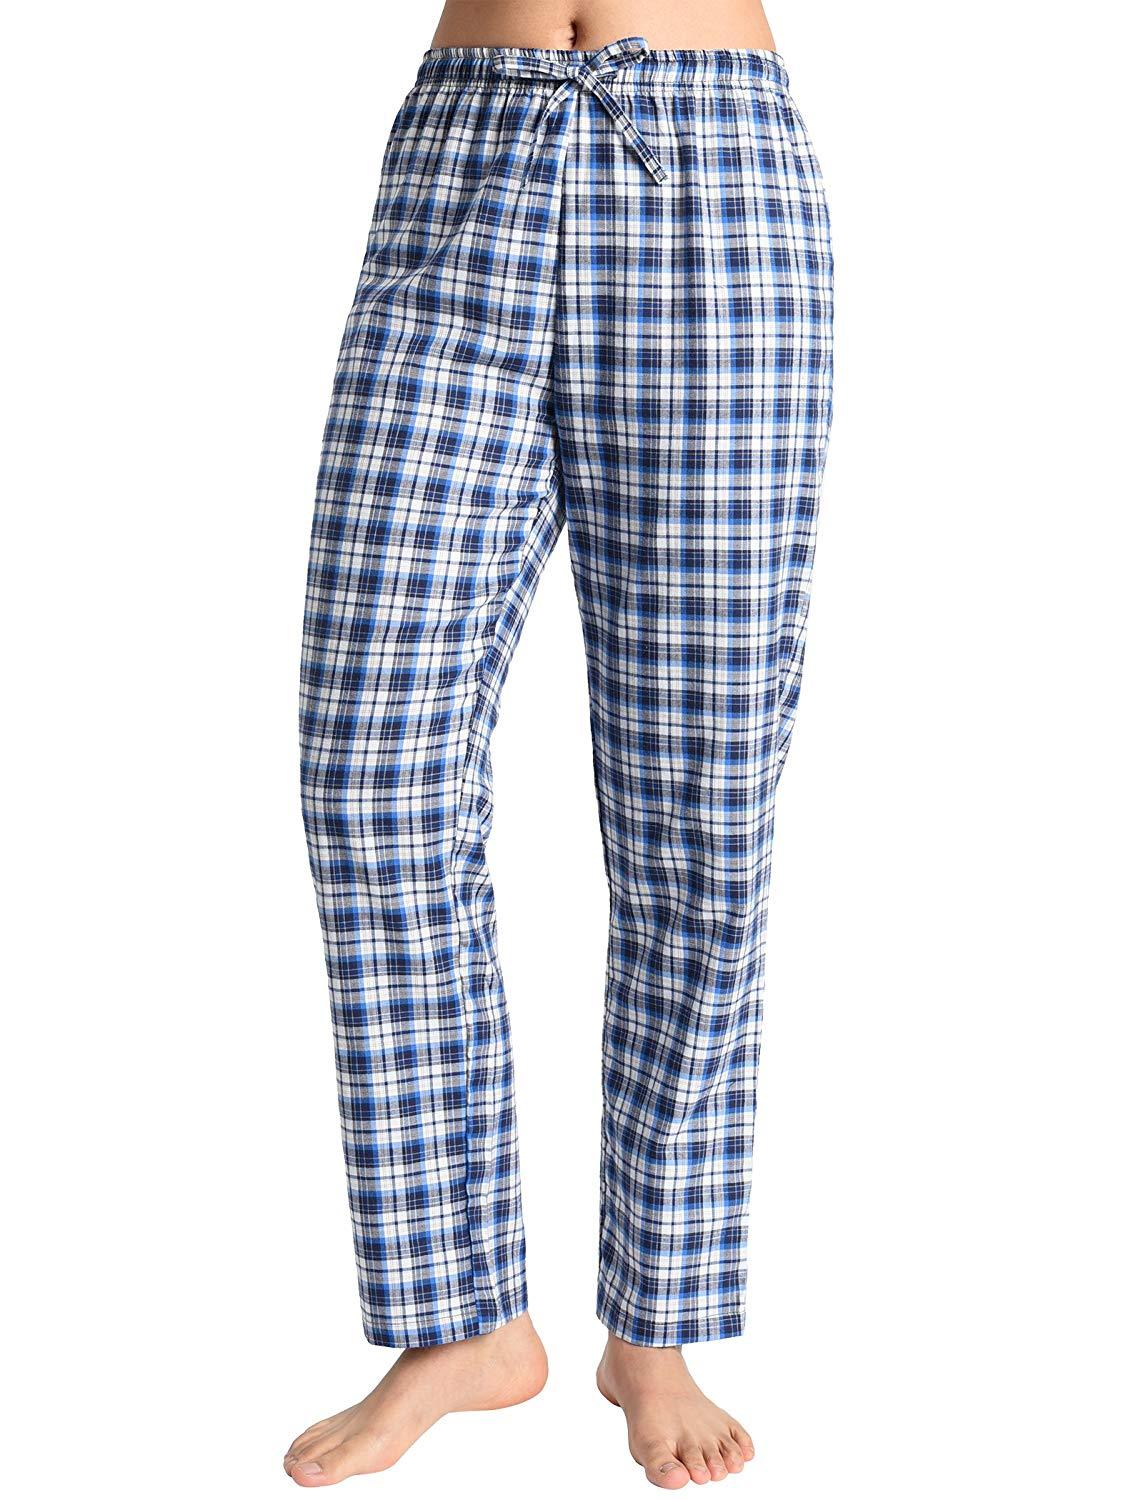 Women Cotton Flannel Tartan Check Pyjamas Bottom Lounge Pants 